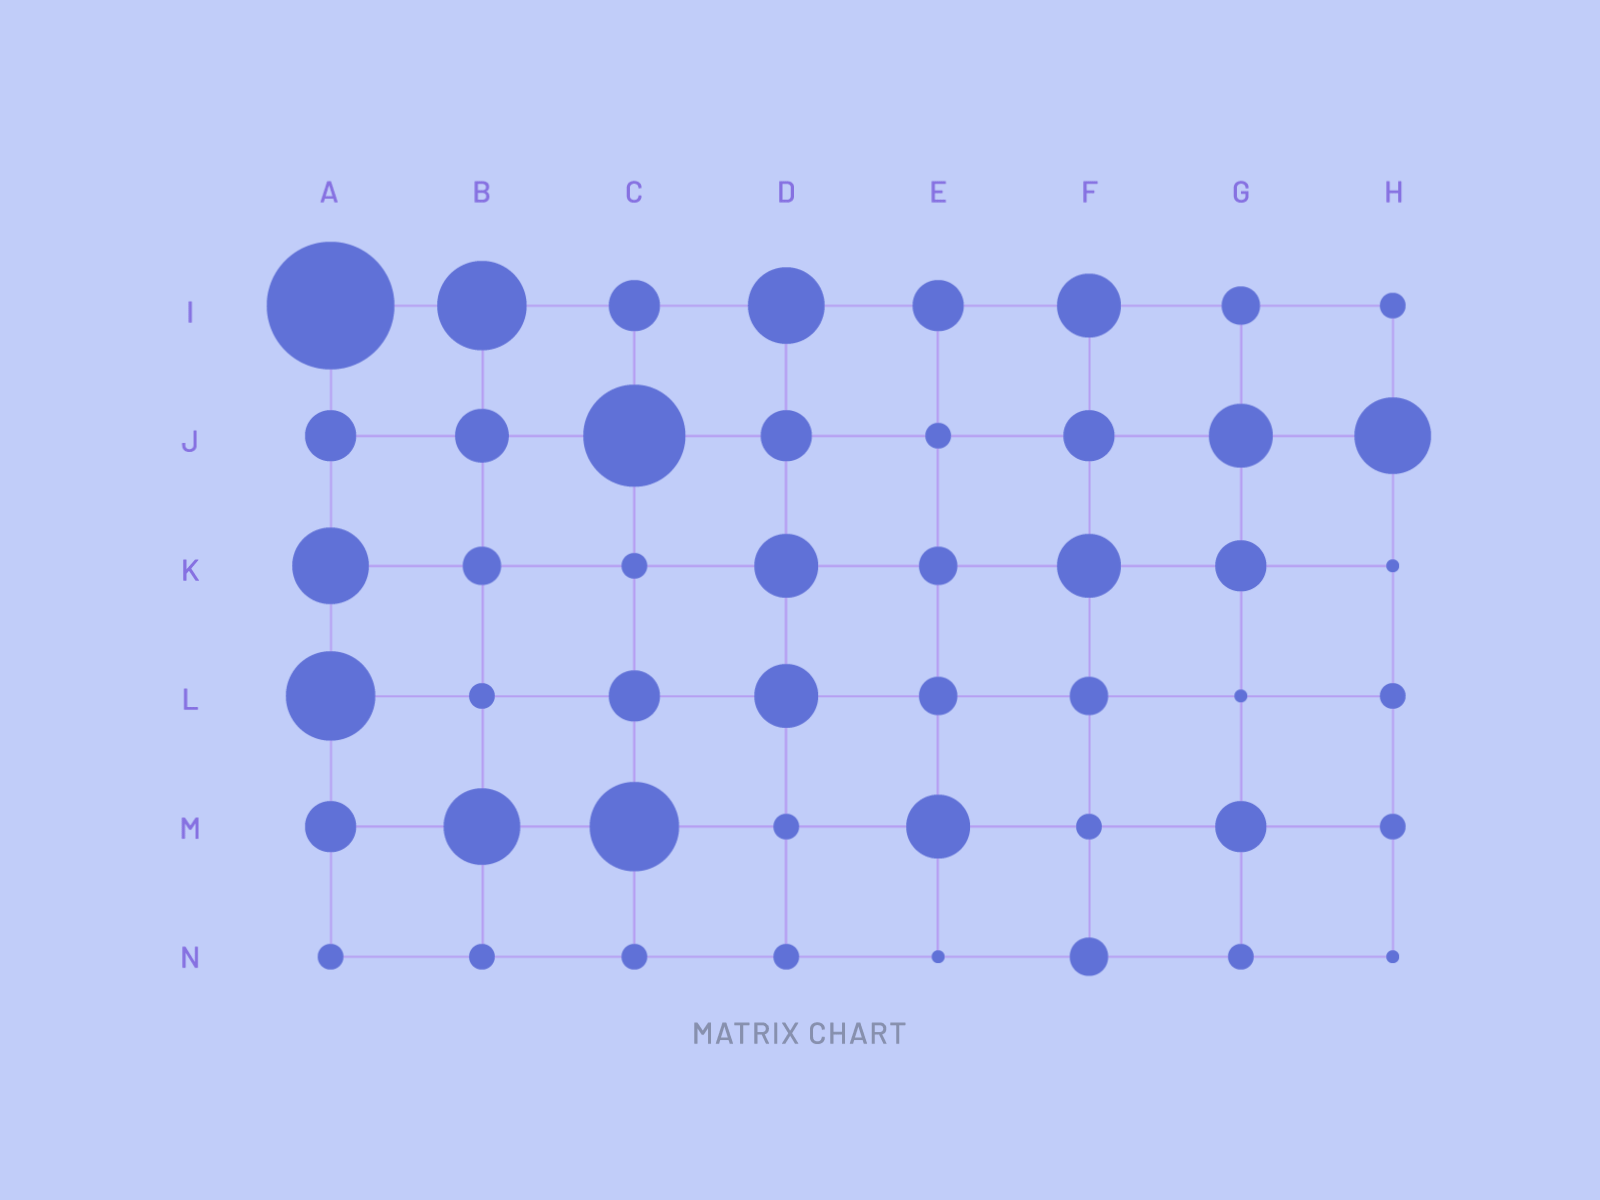 Animated Matrix Chart | 49 Days of Charts